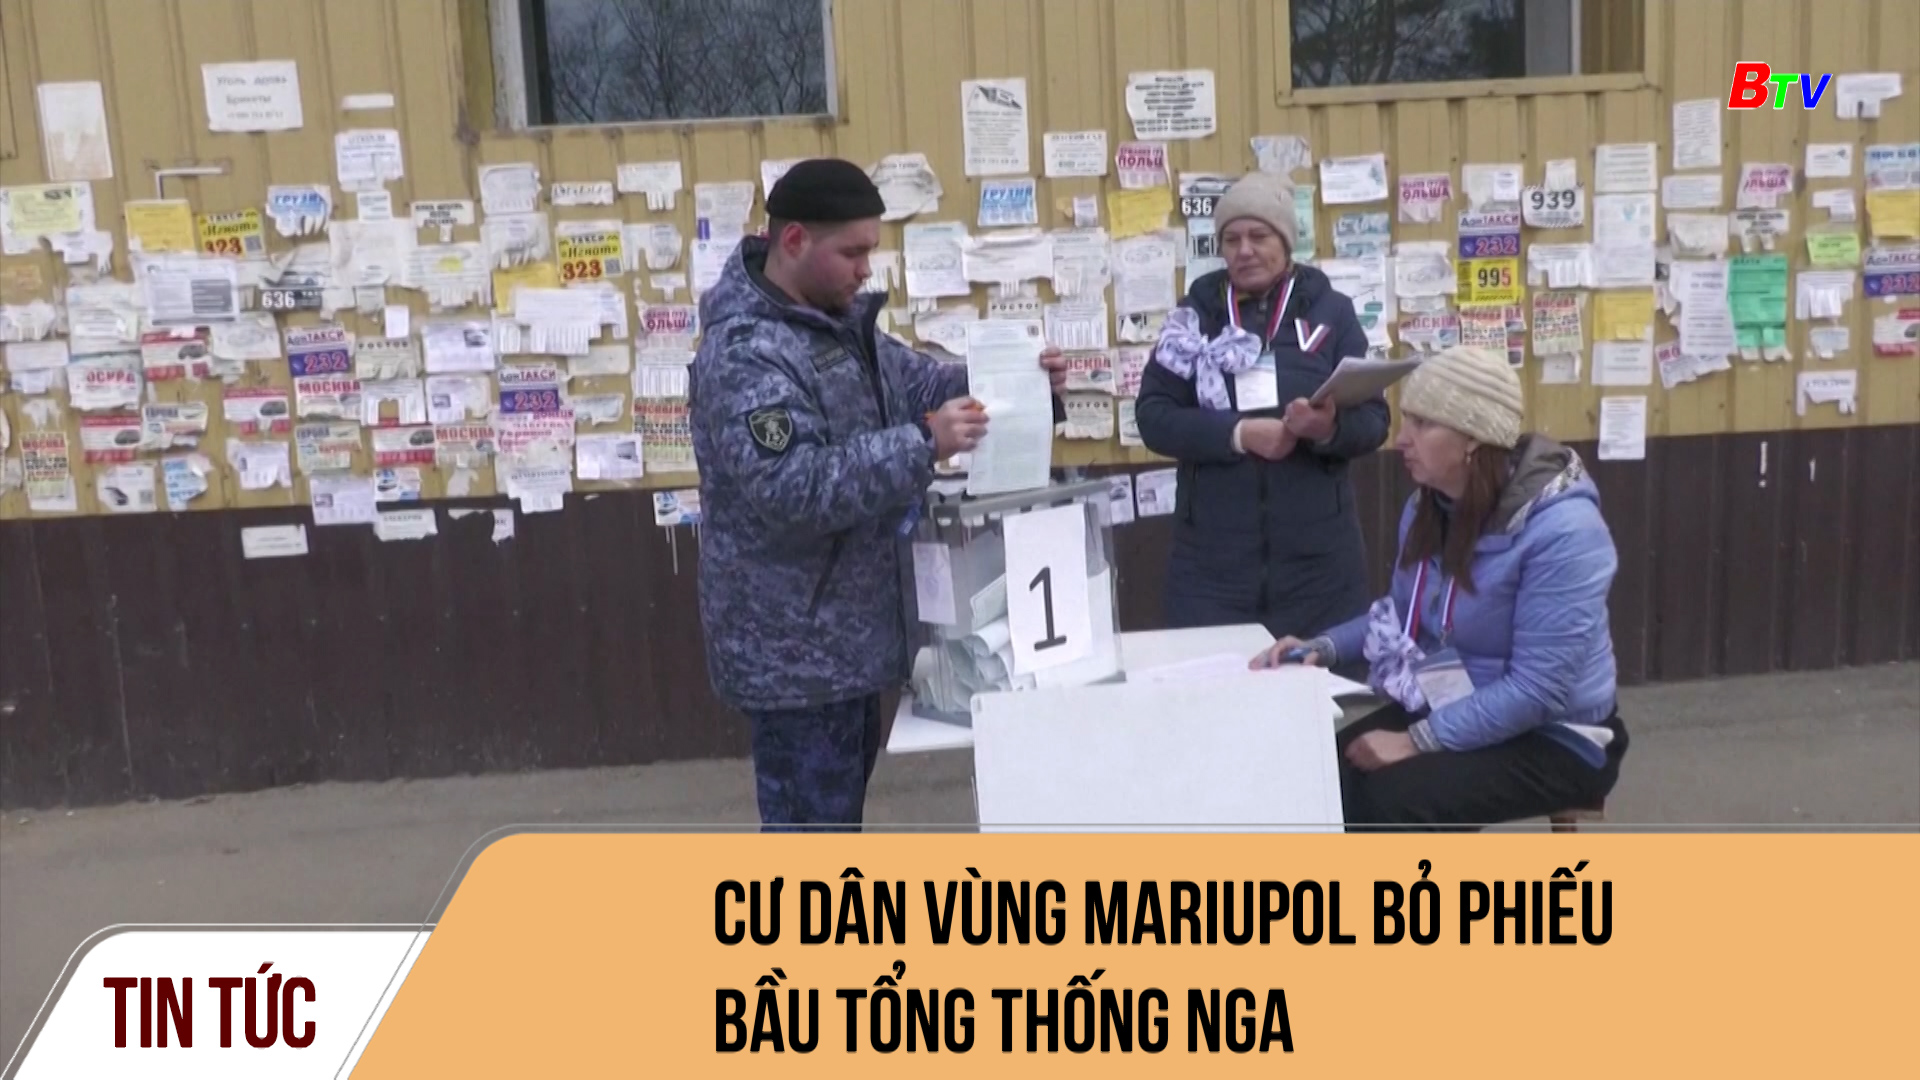 Cư dân vùng Mariupol bỏ phiếu bầu tổng thống Nga	